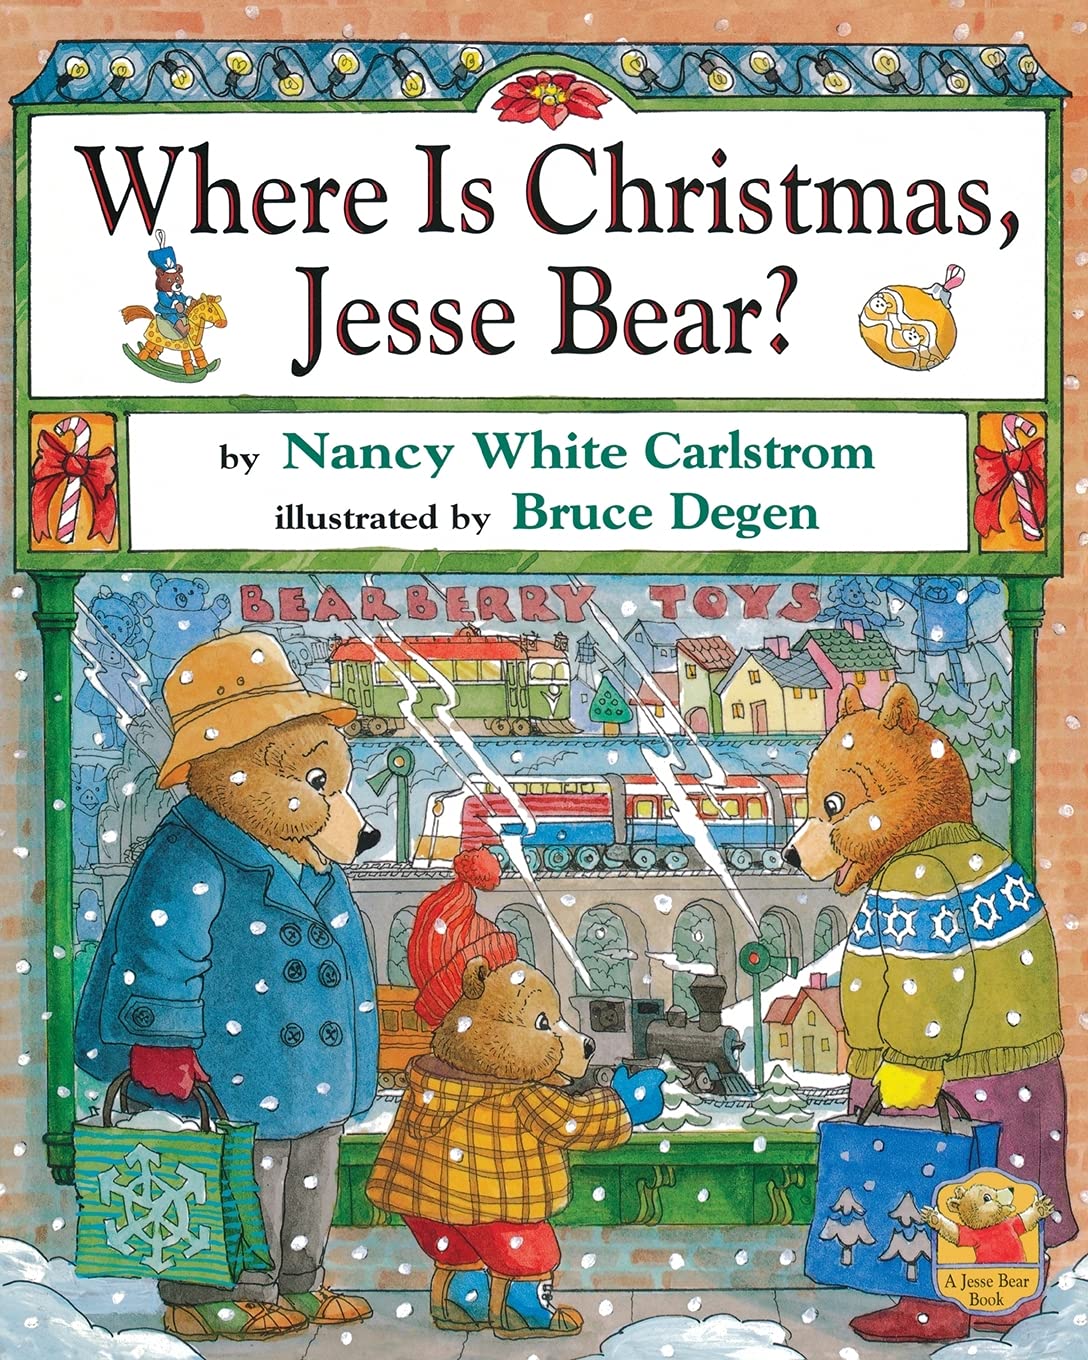 Where Is Christmas, Jesse Bear?